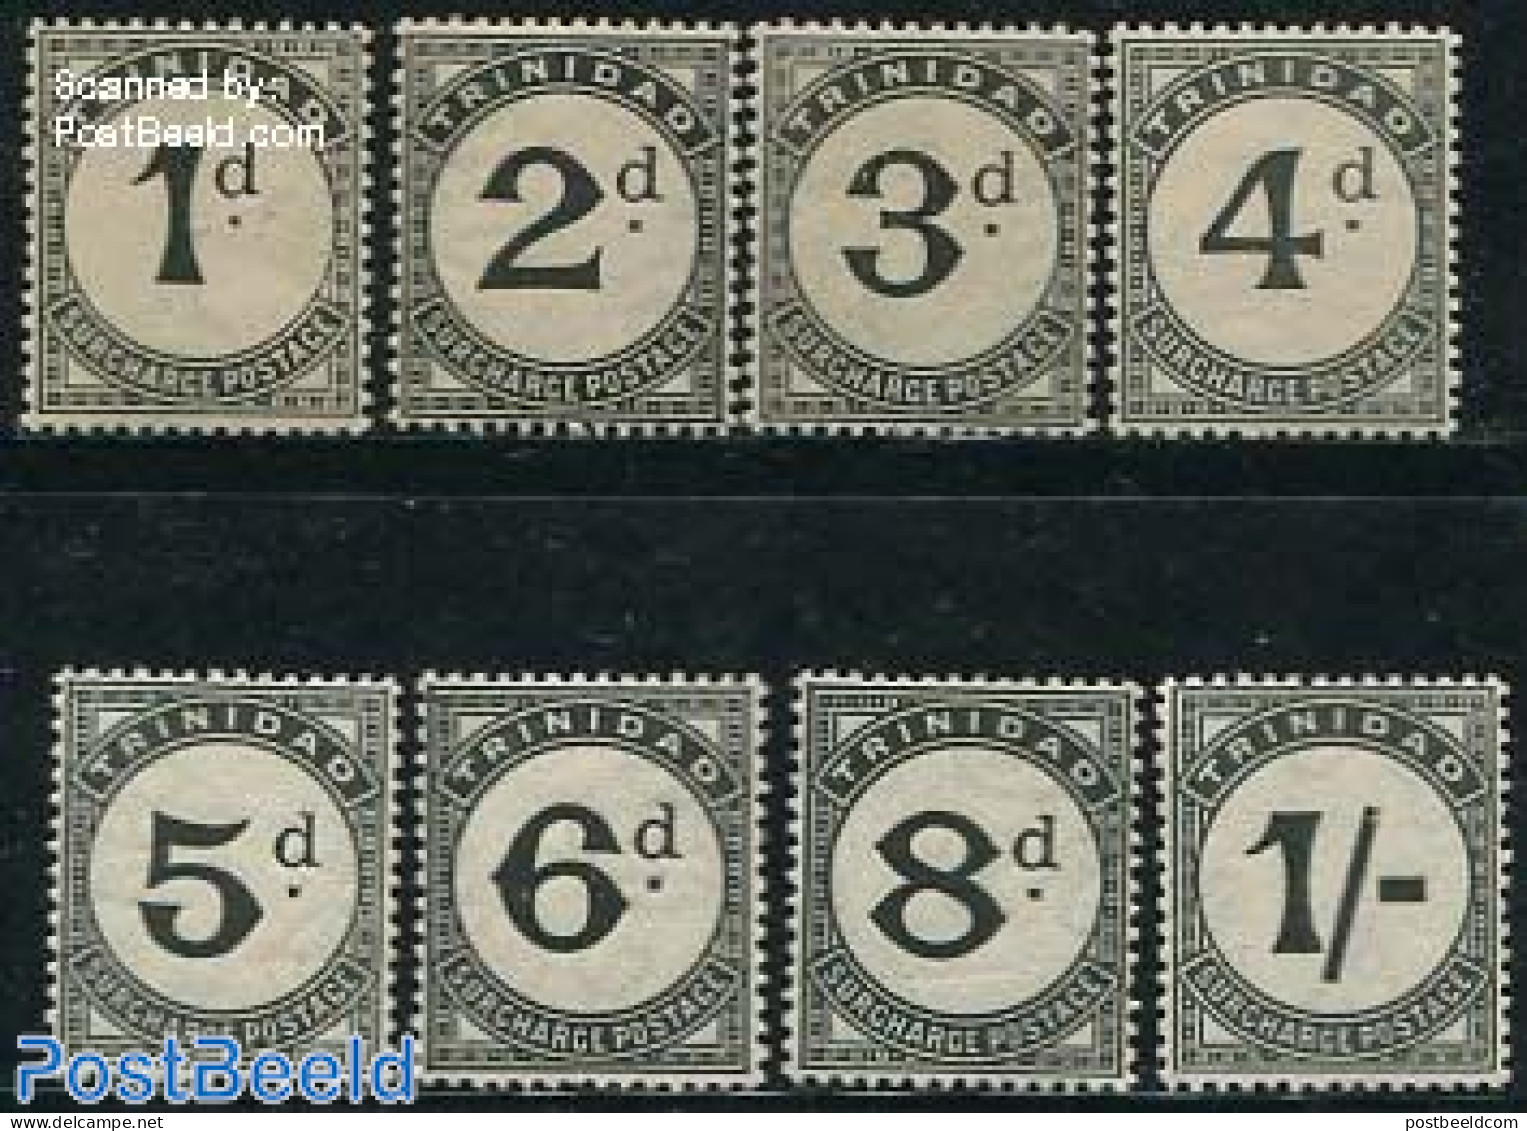 Trinidad & Tobago 1923 Postage Due 8v, Unused (hinged) - Trinité & Tobago (1962-...)